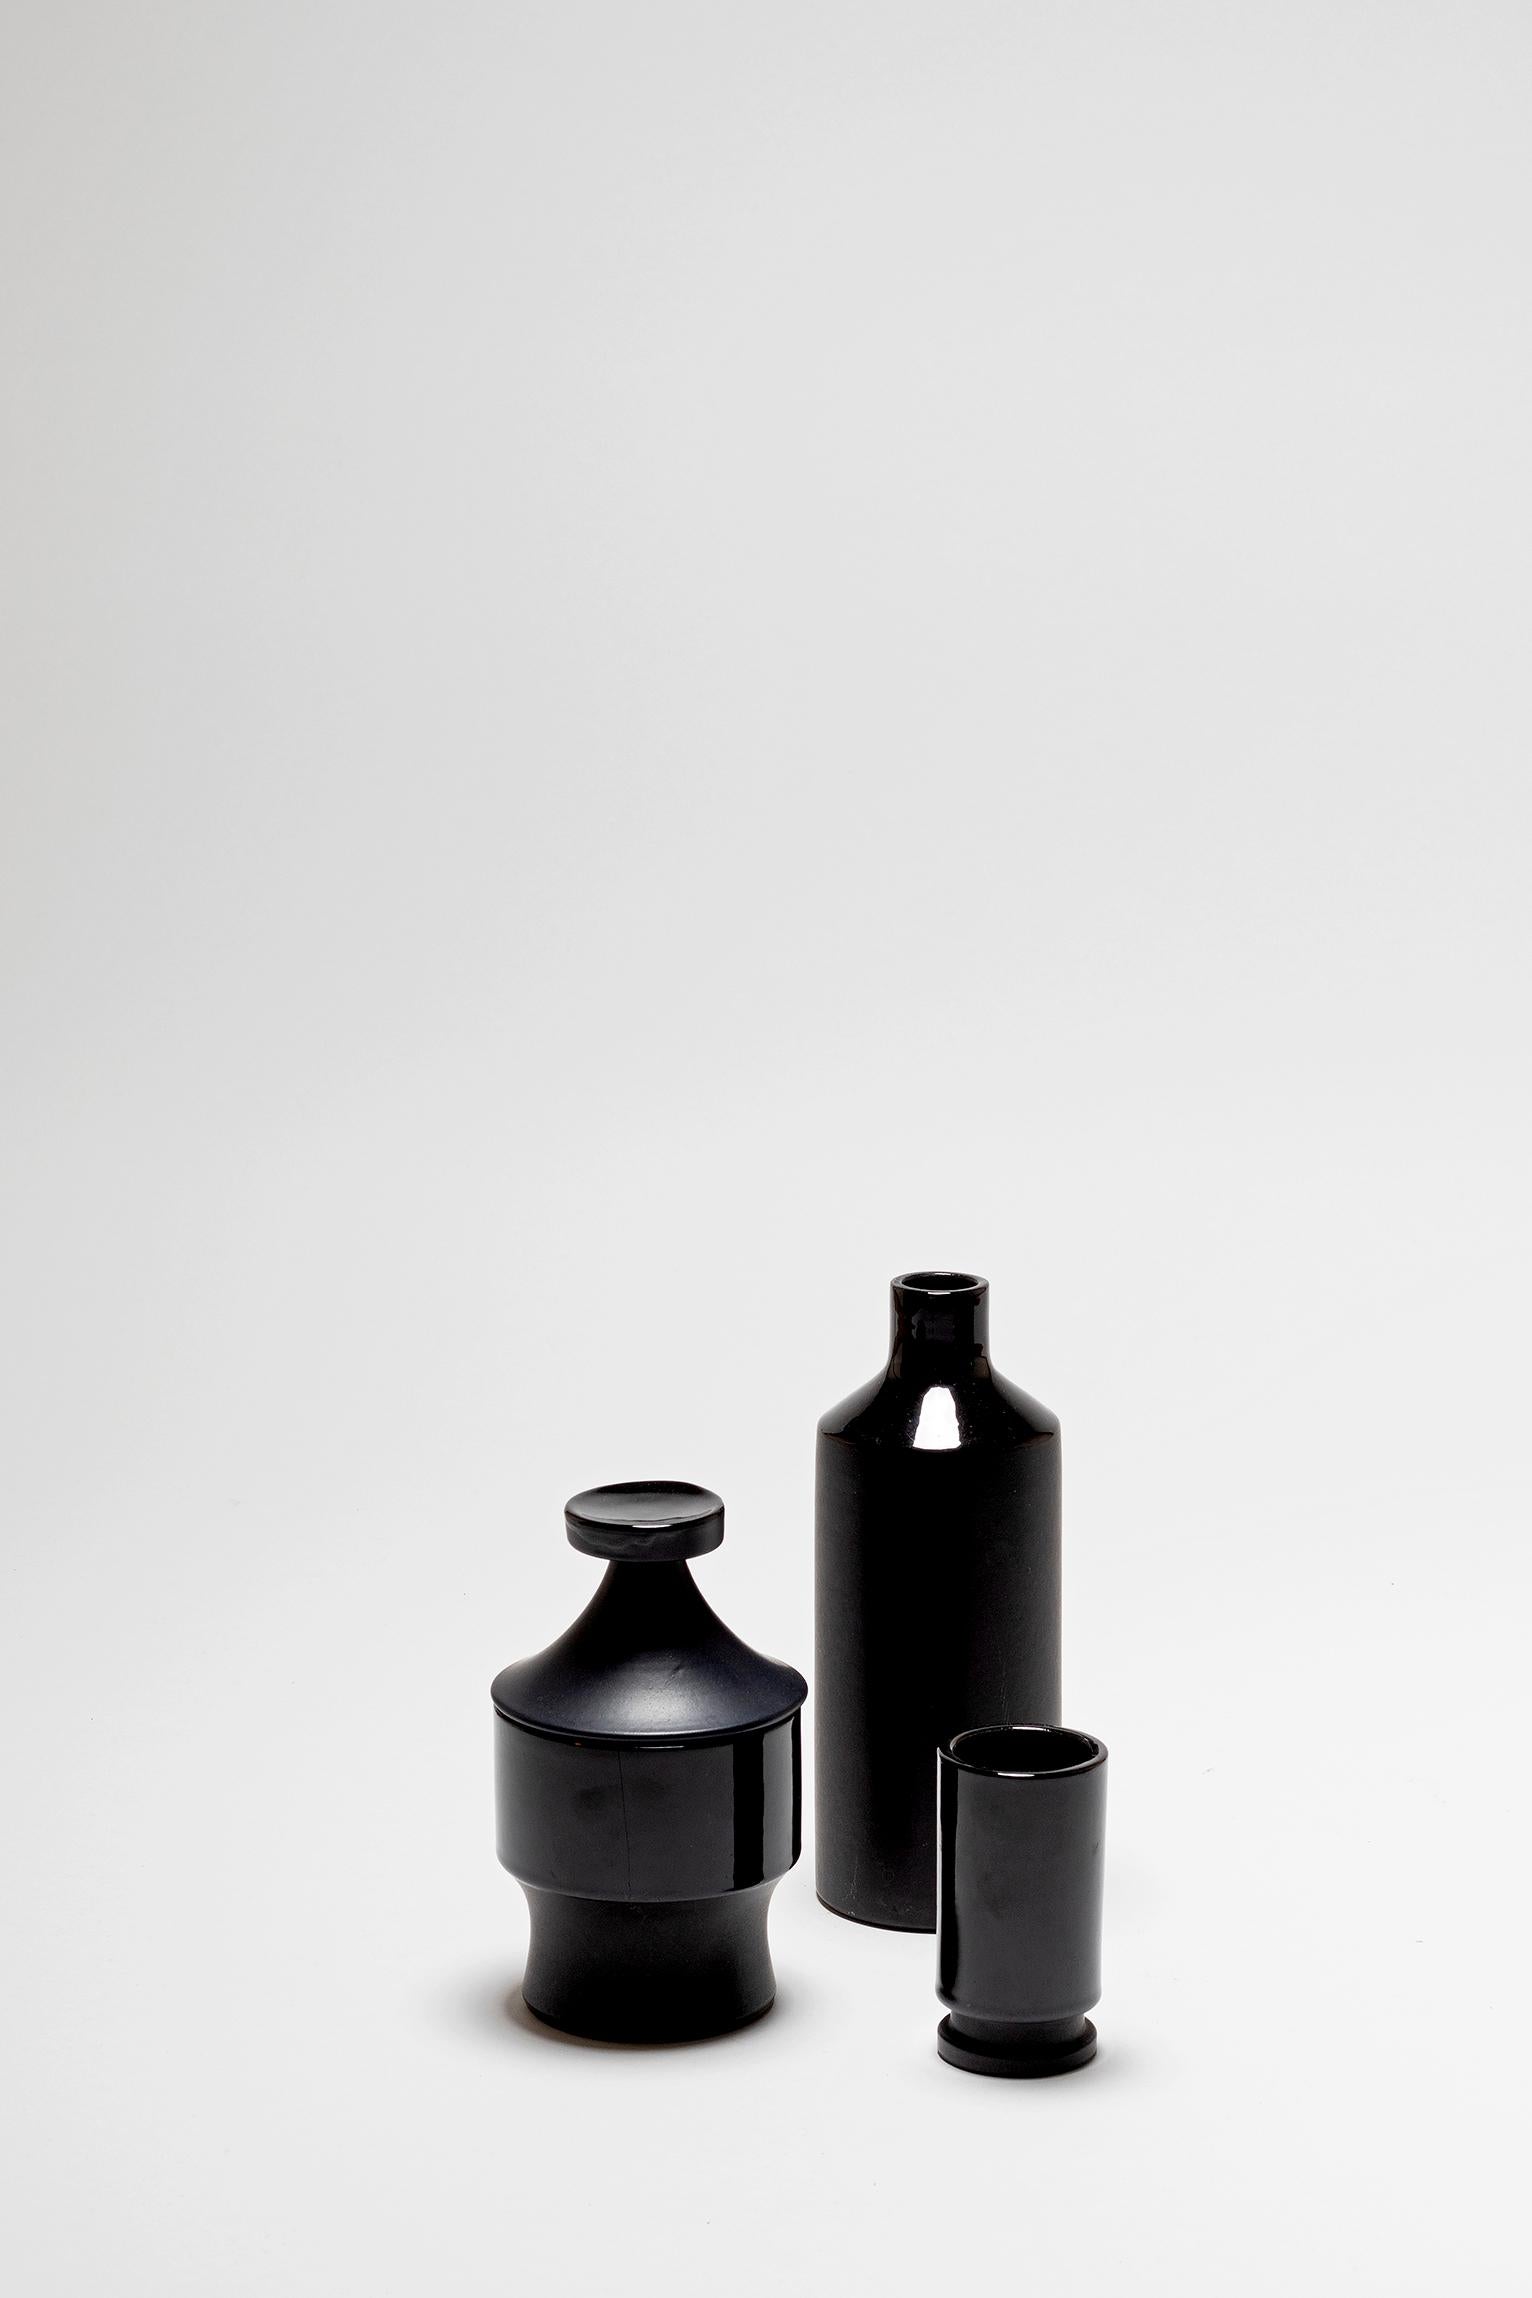 Swiss Set of Three Black Ceramic Vessels, by Lucerner Keramik